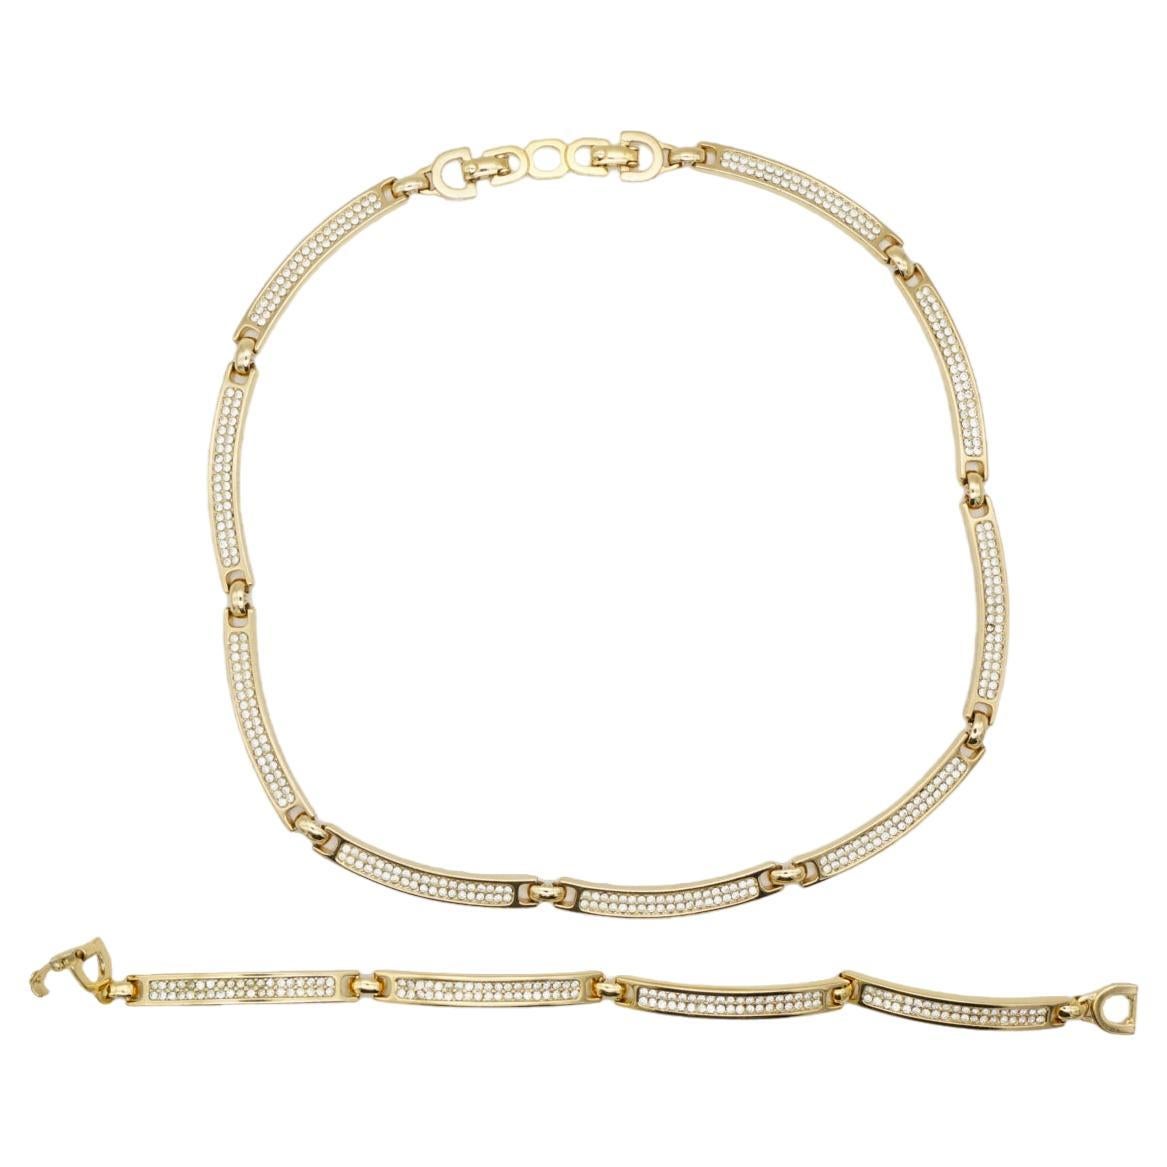 Christian Dior Vintage 1980s Unisex Crystals Interlink Choker Necklace Bracelet For Sale